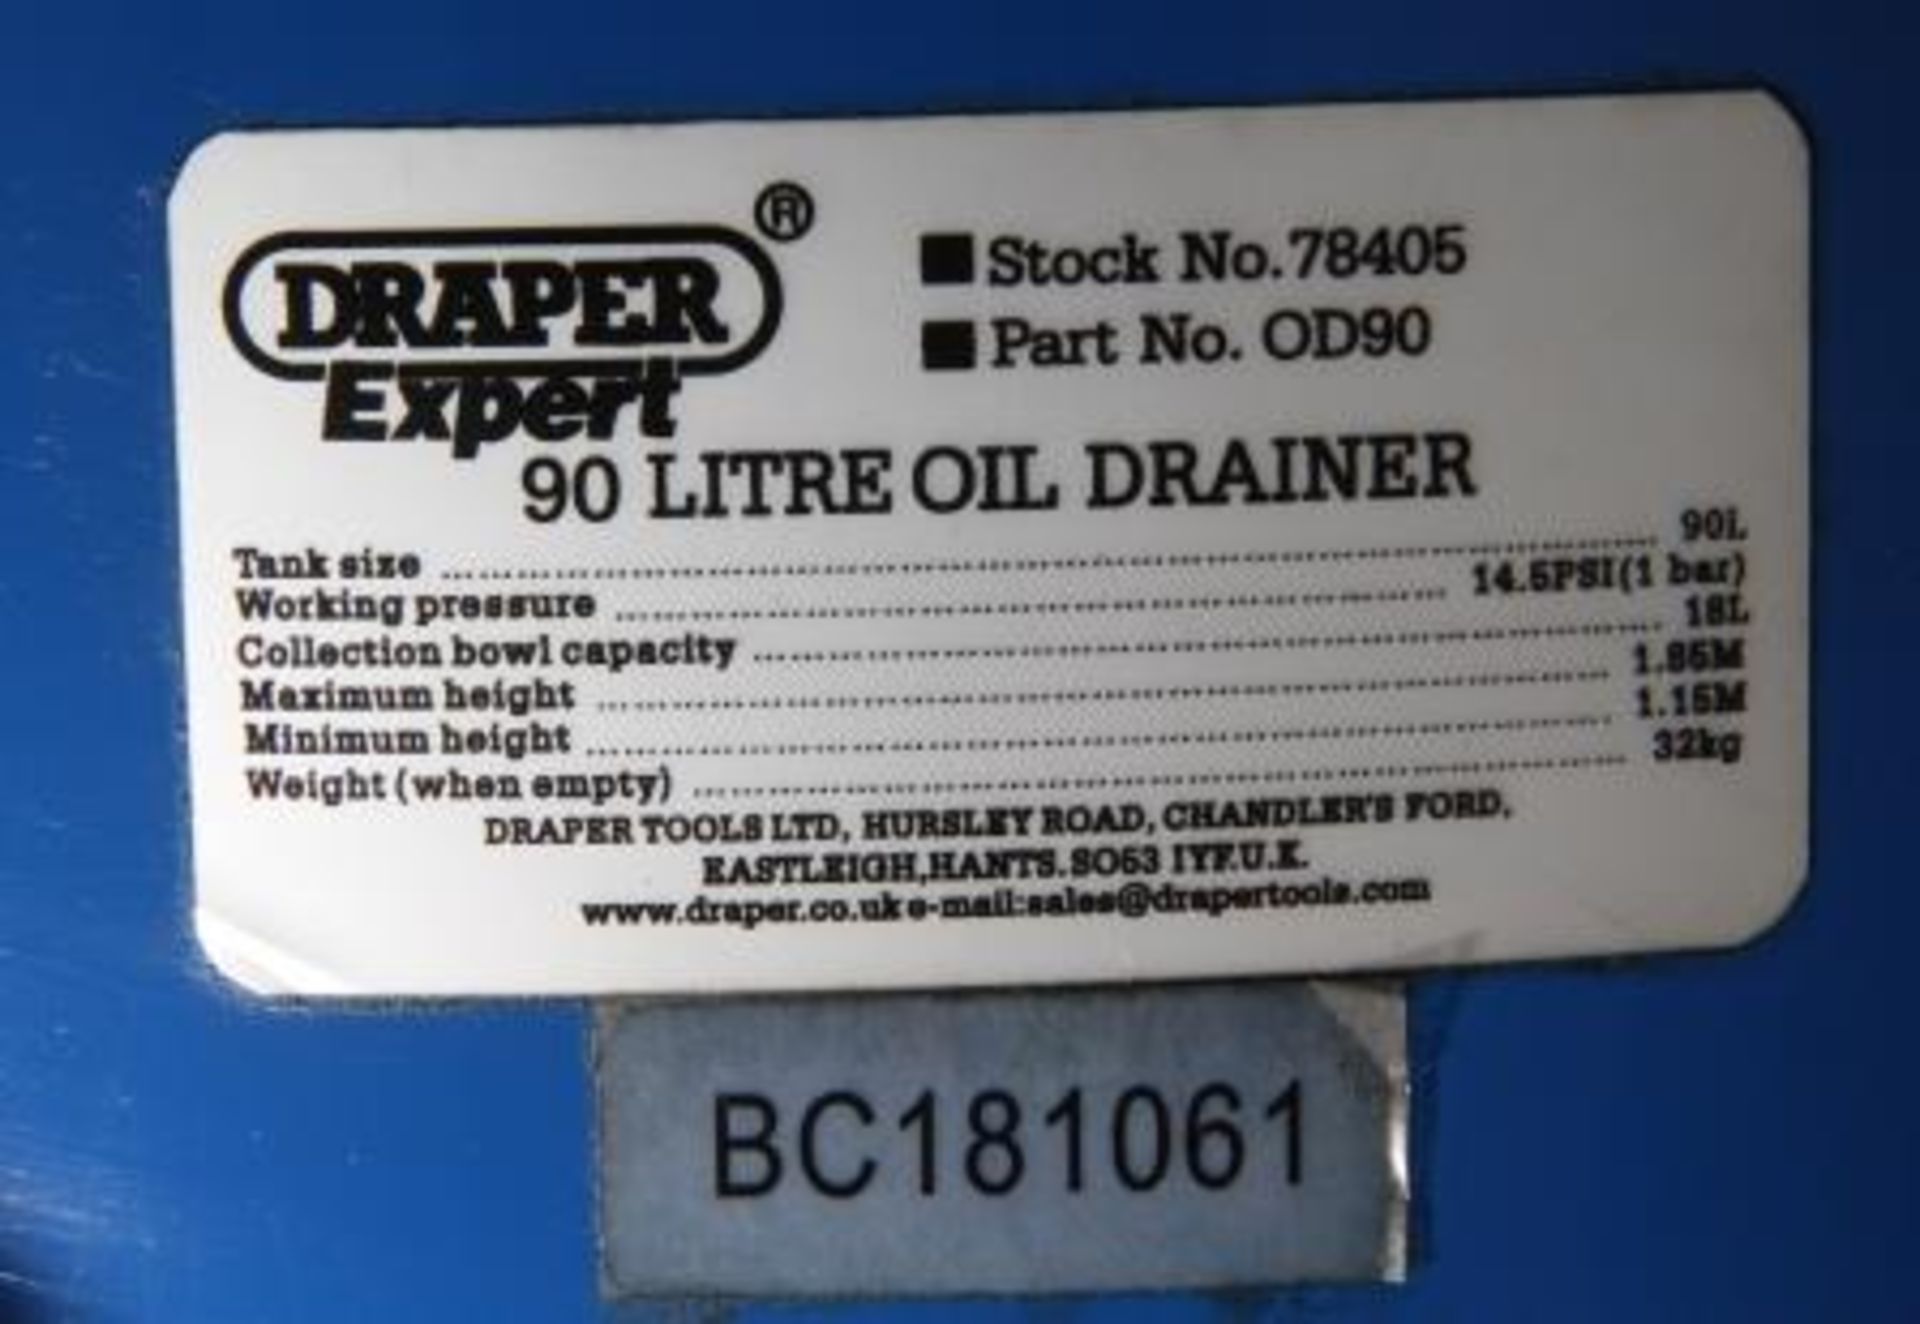 Draper Expert 90 Litre Oil Drainer - Image 2 of 2